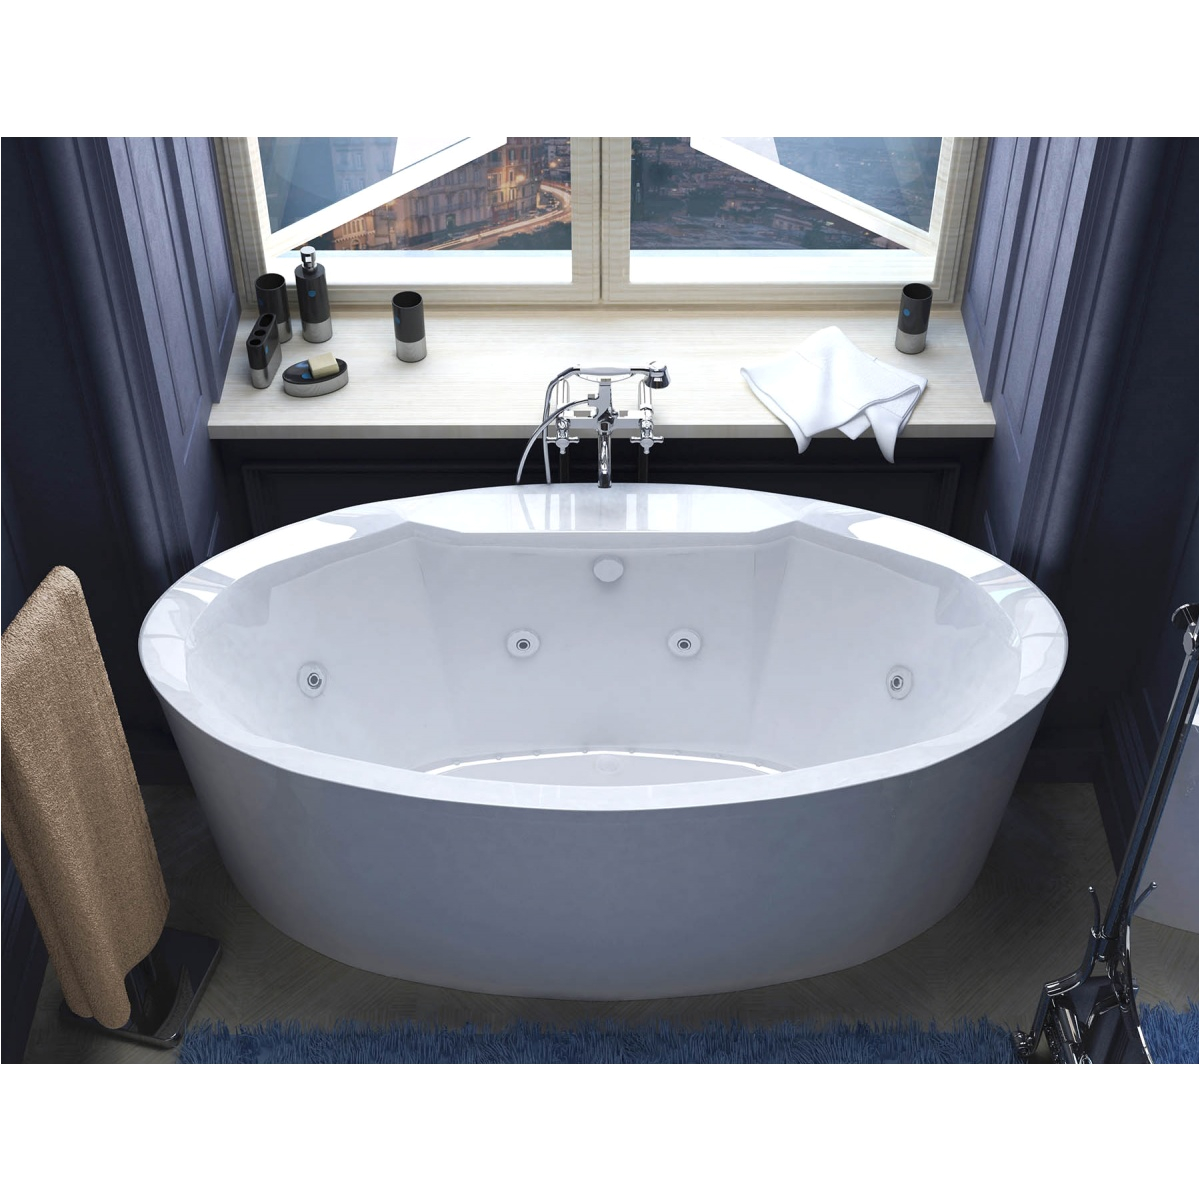 34 x 68 oval bathtub